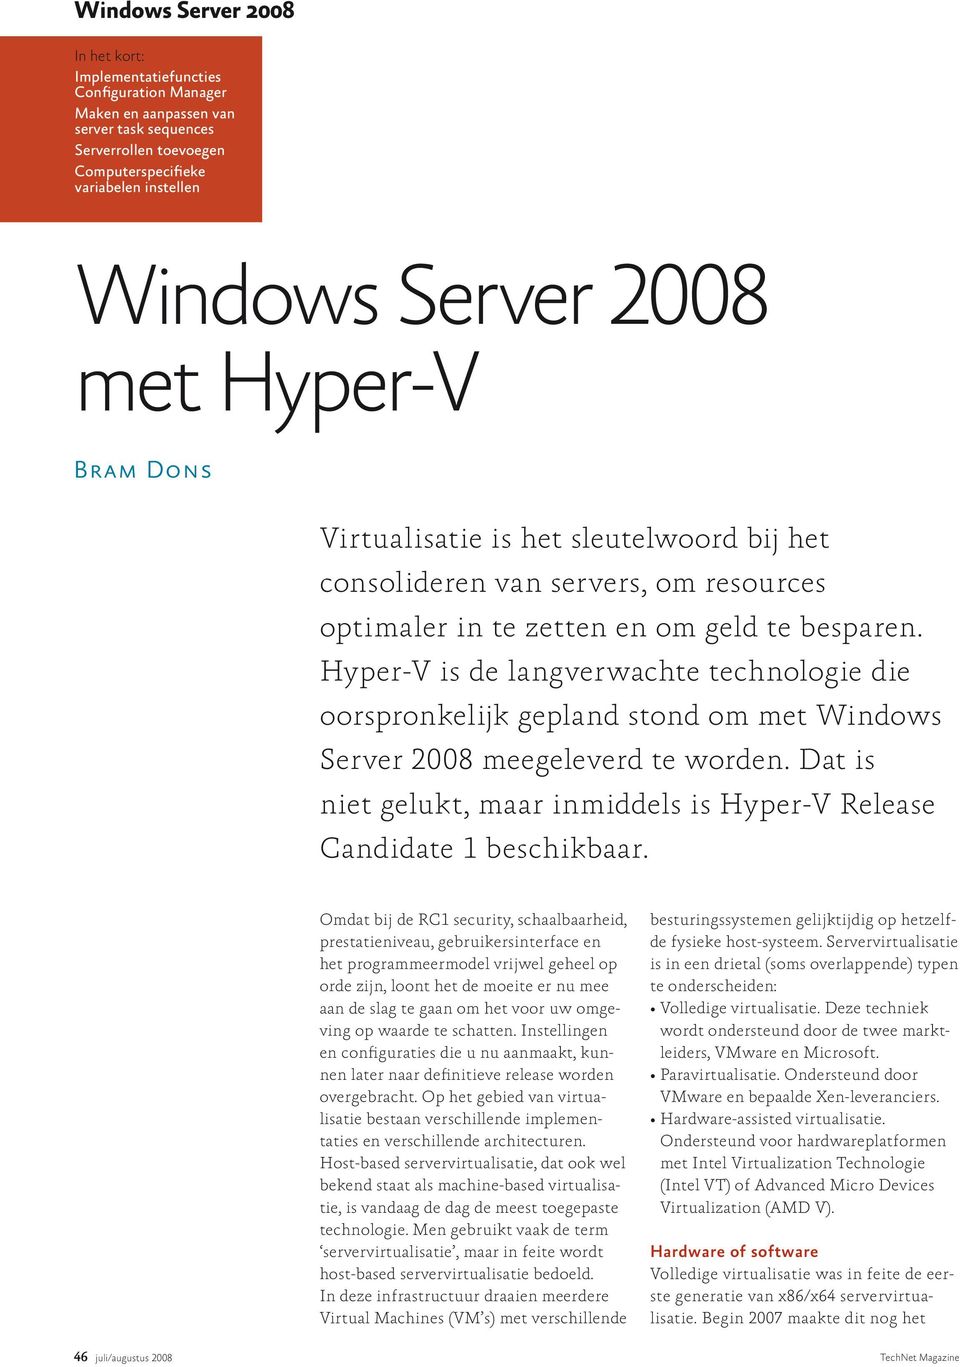 Hyper-V is de langverwachte technologie die oorspronkelijk gepland stond om met Windows Server 2008 meegeleverd te worden.